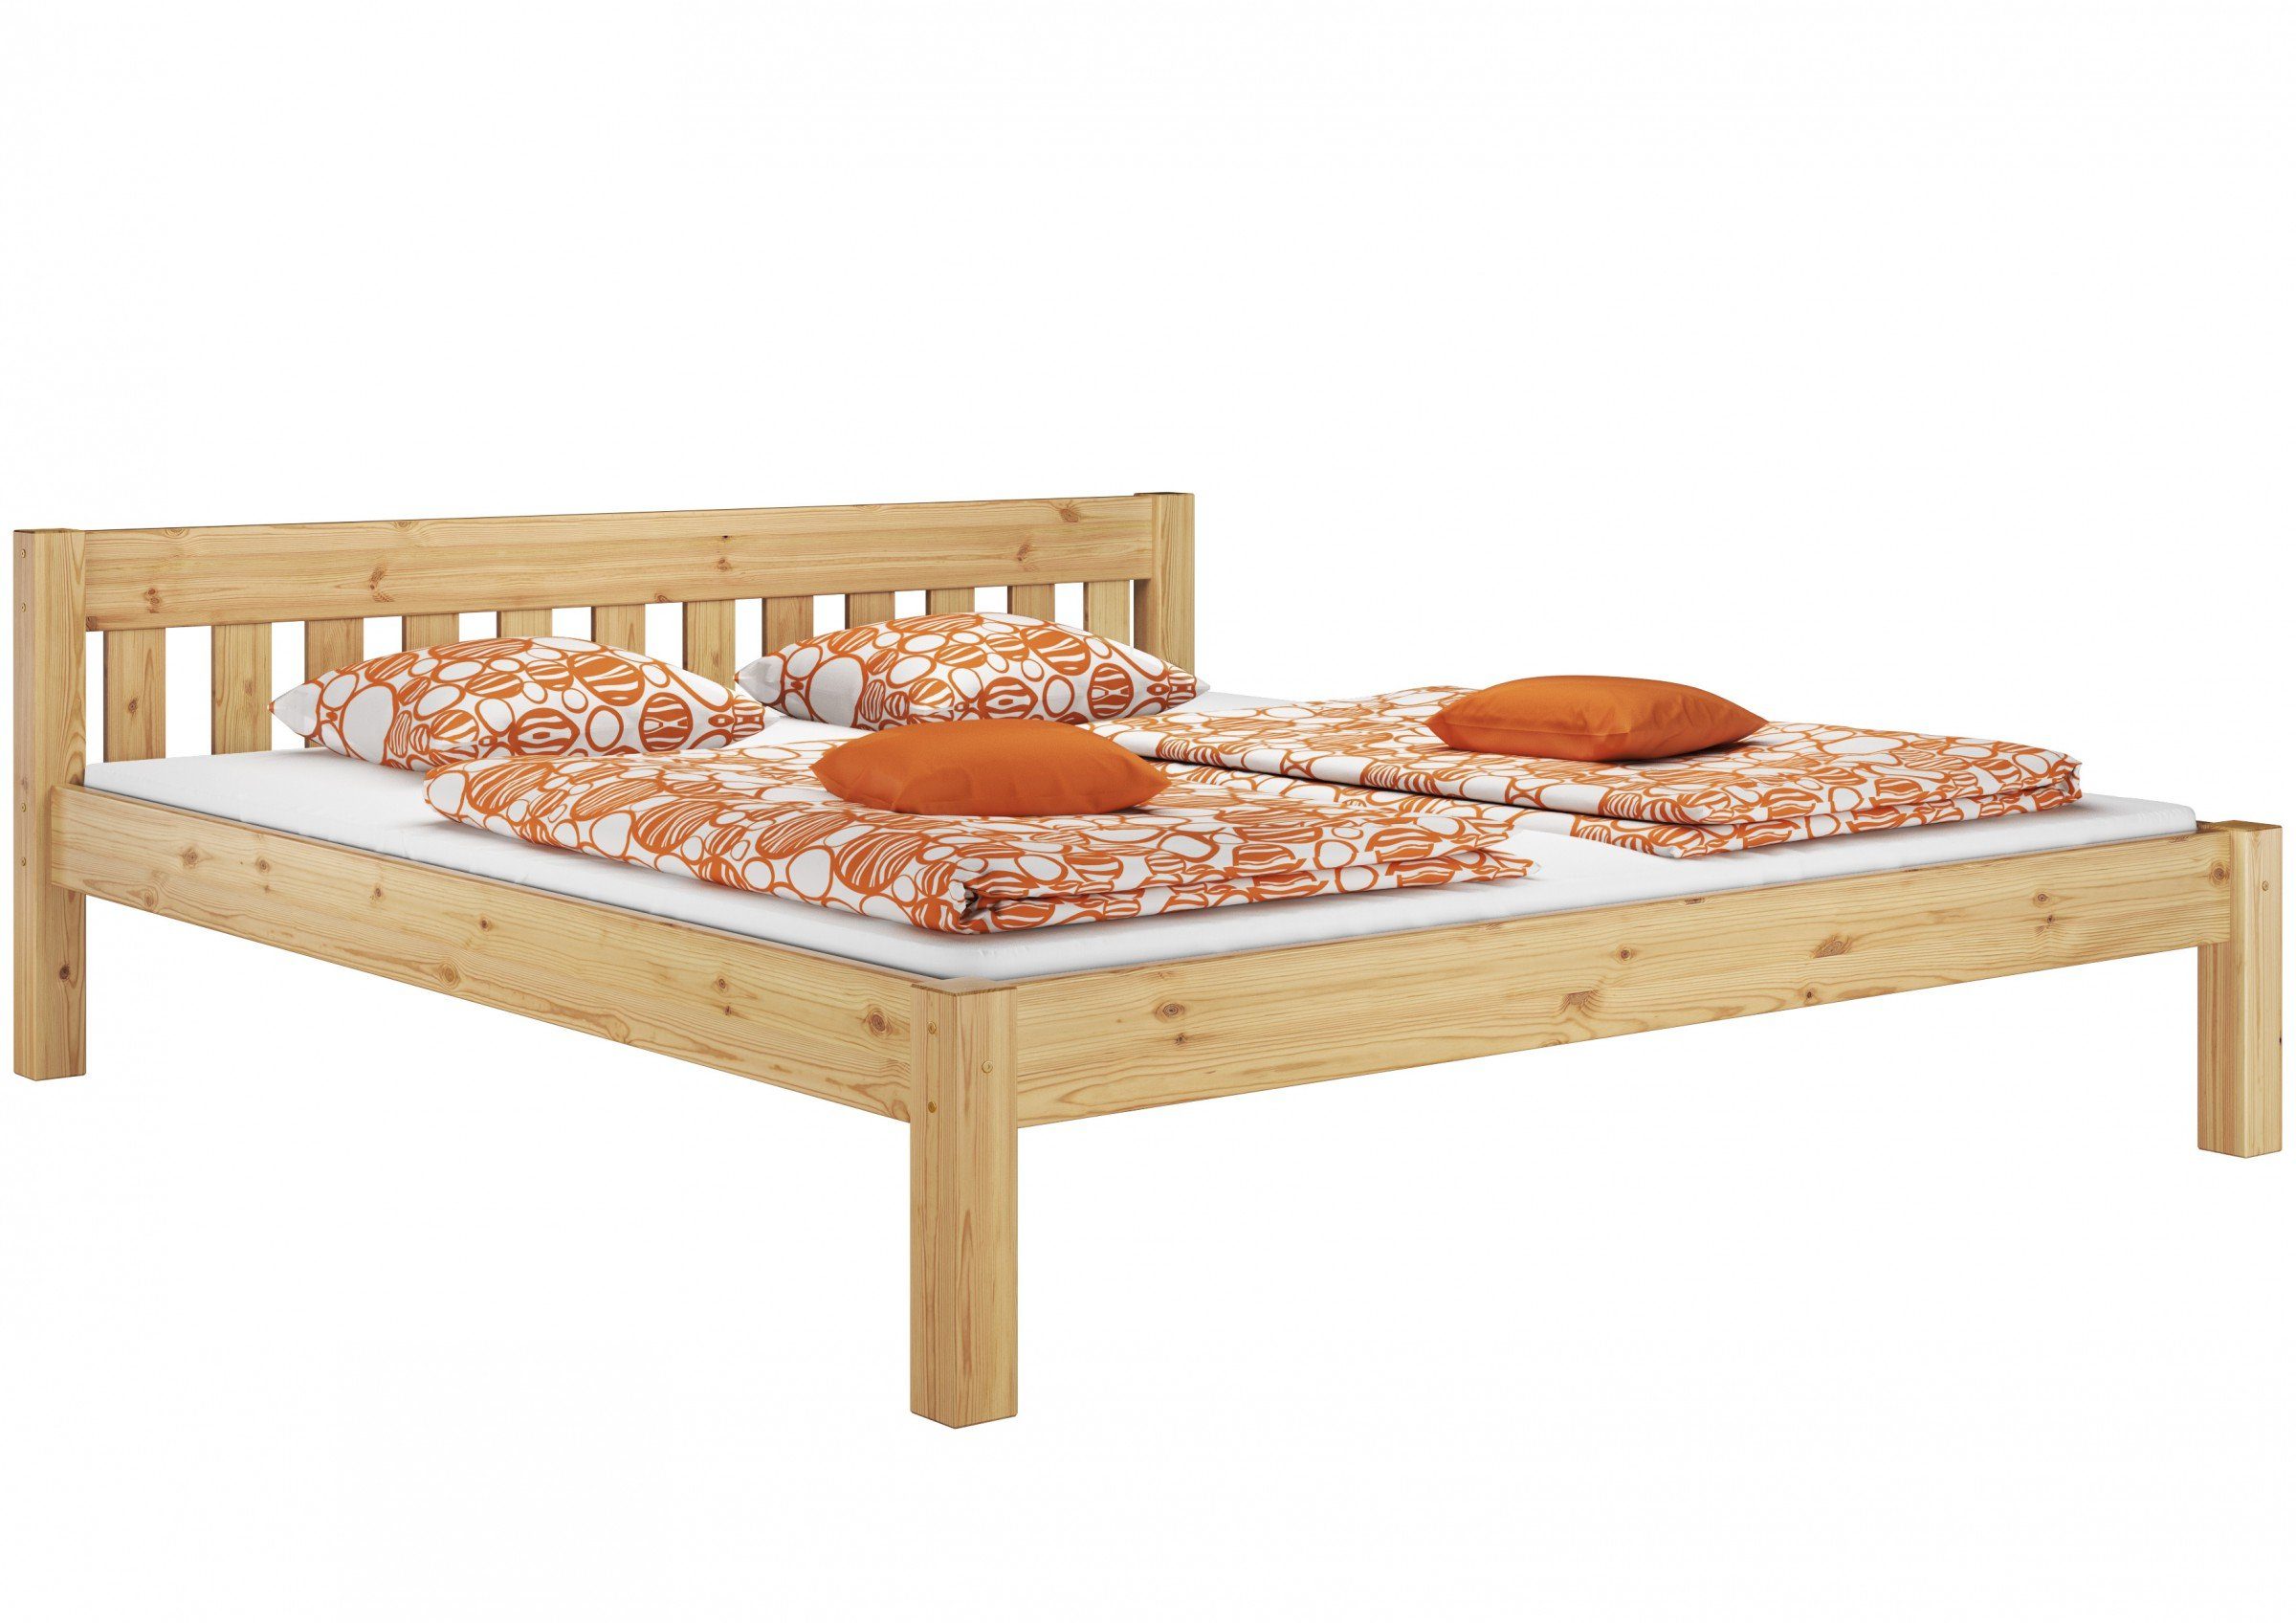 ERST-HOLZ Bett Doppelbett mit zwei Rost Kieferfarblos lackiert 180x200, und Matratzen